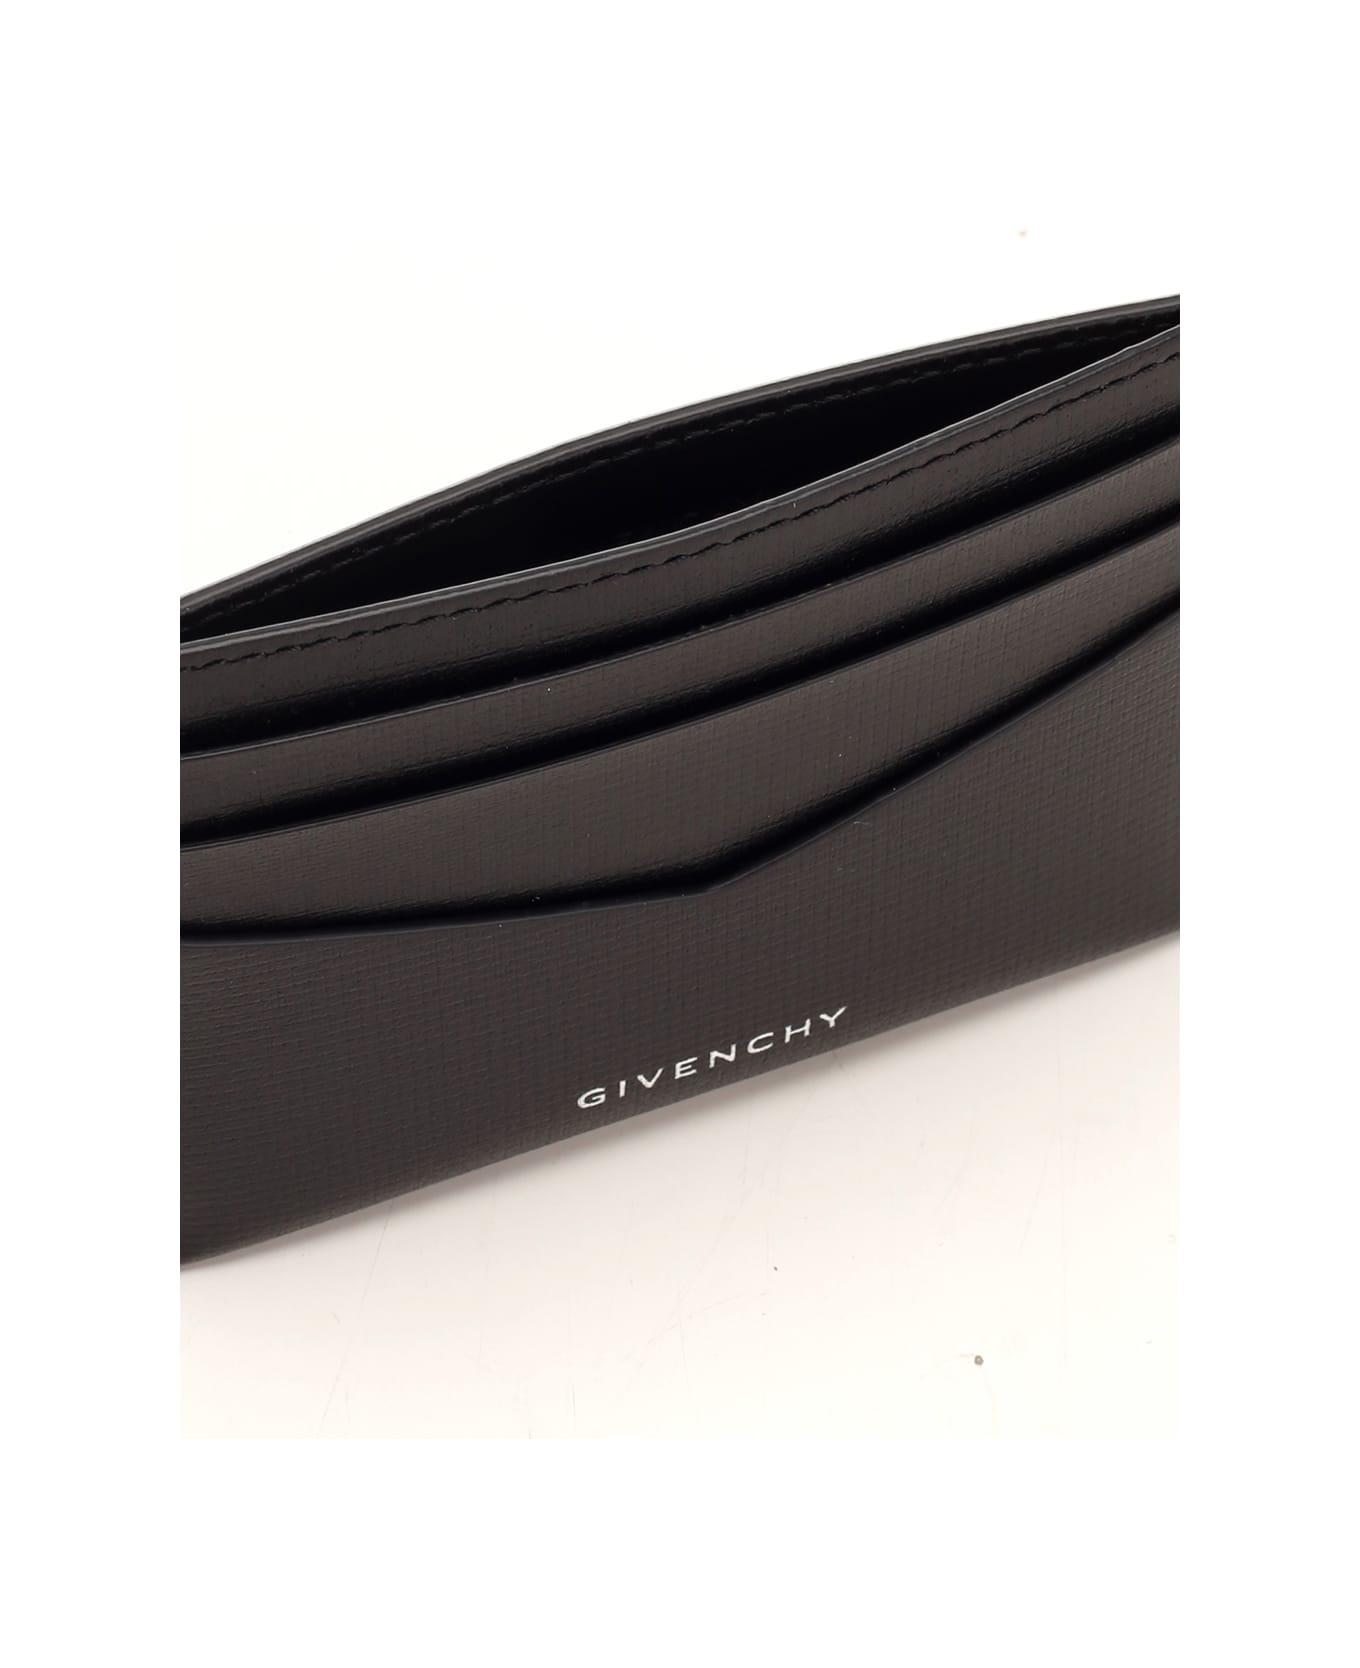 Givenchy Black Leather Card Holder - BLACK